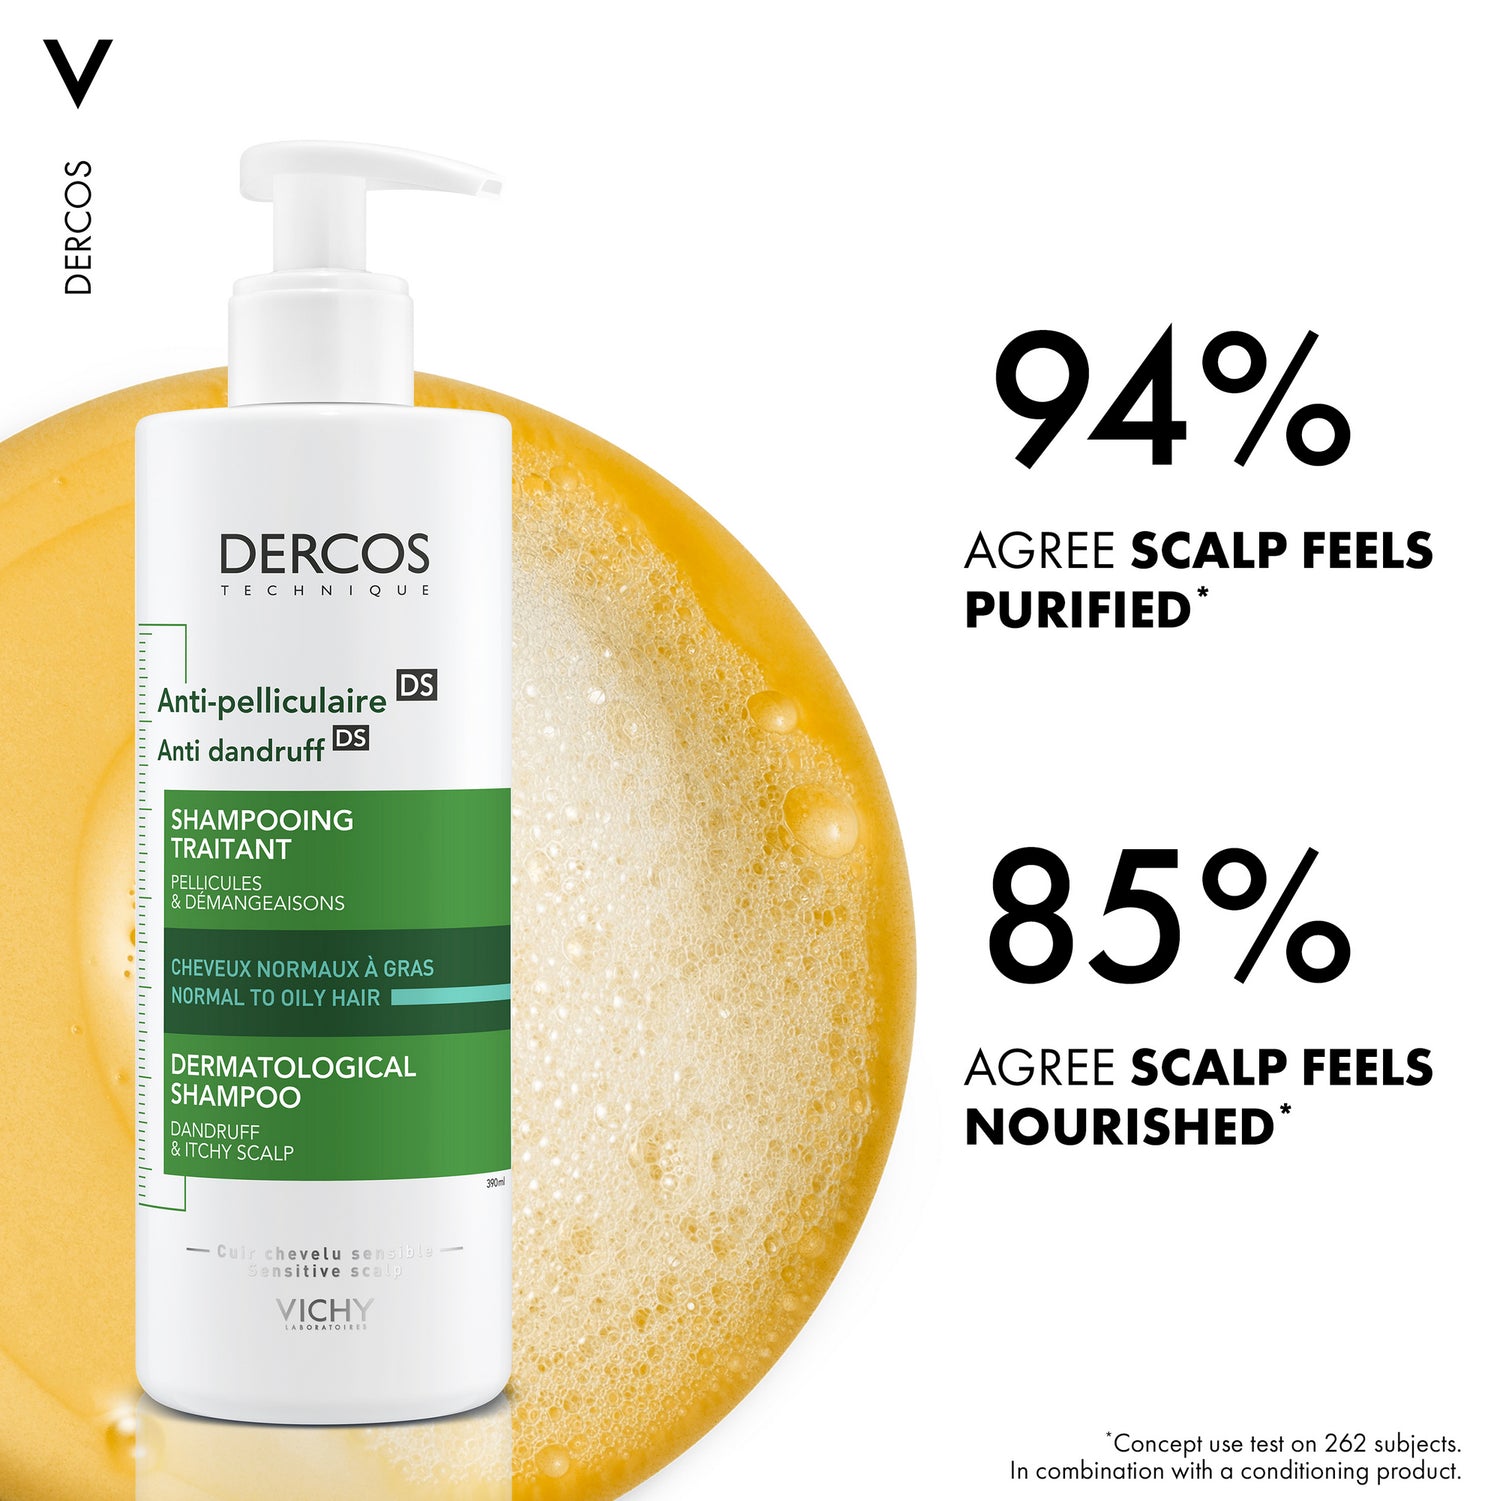 VICHY Decros Anti-Dandruff Shampoo For Normal/Oily Hair 390ML Info